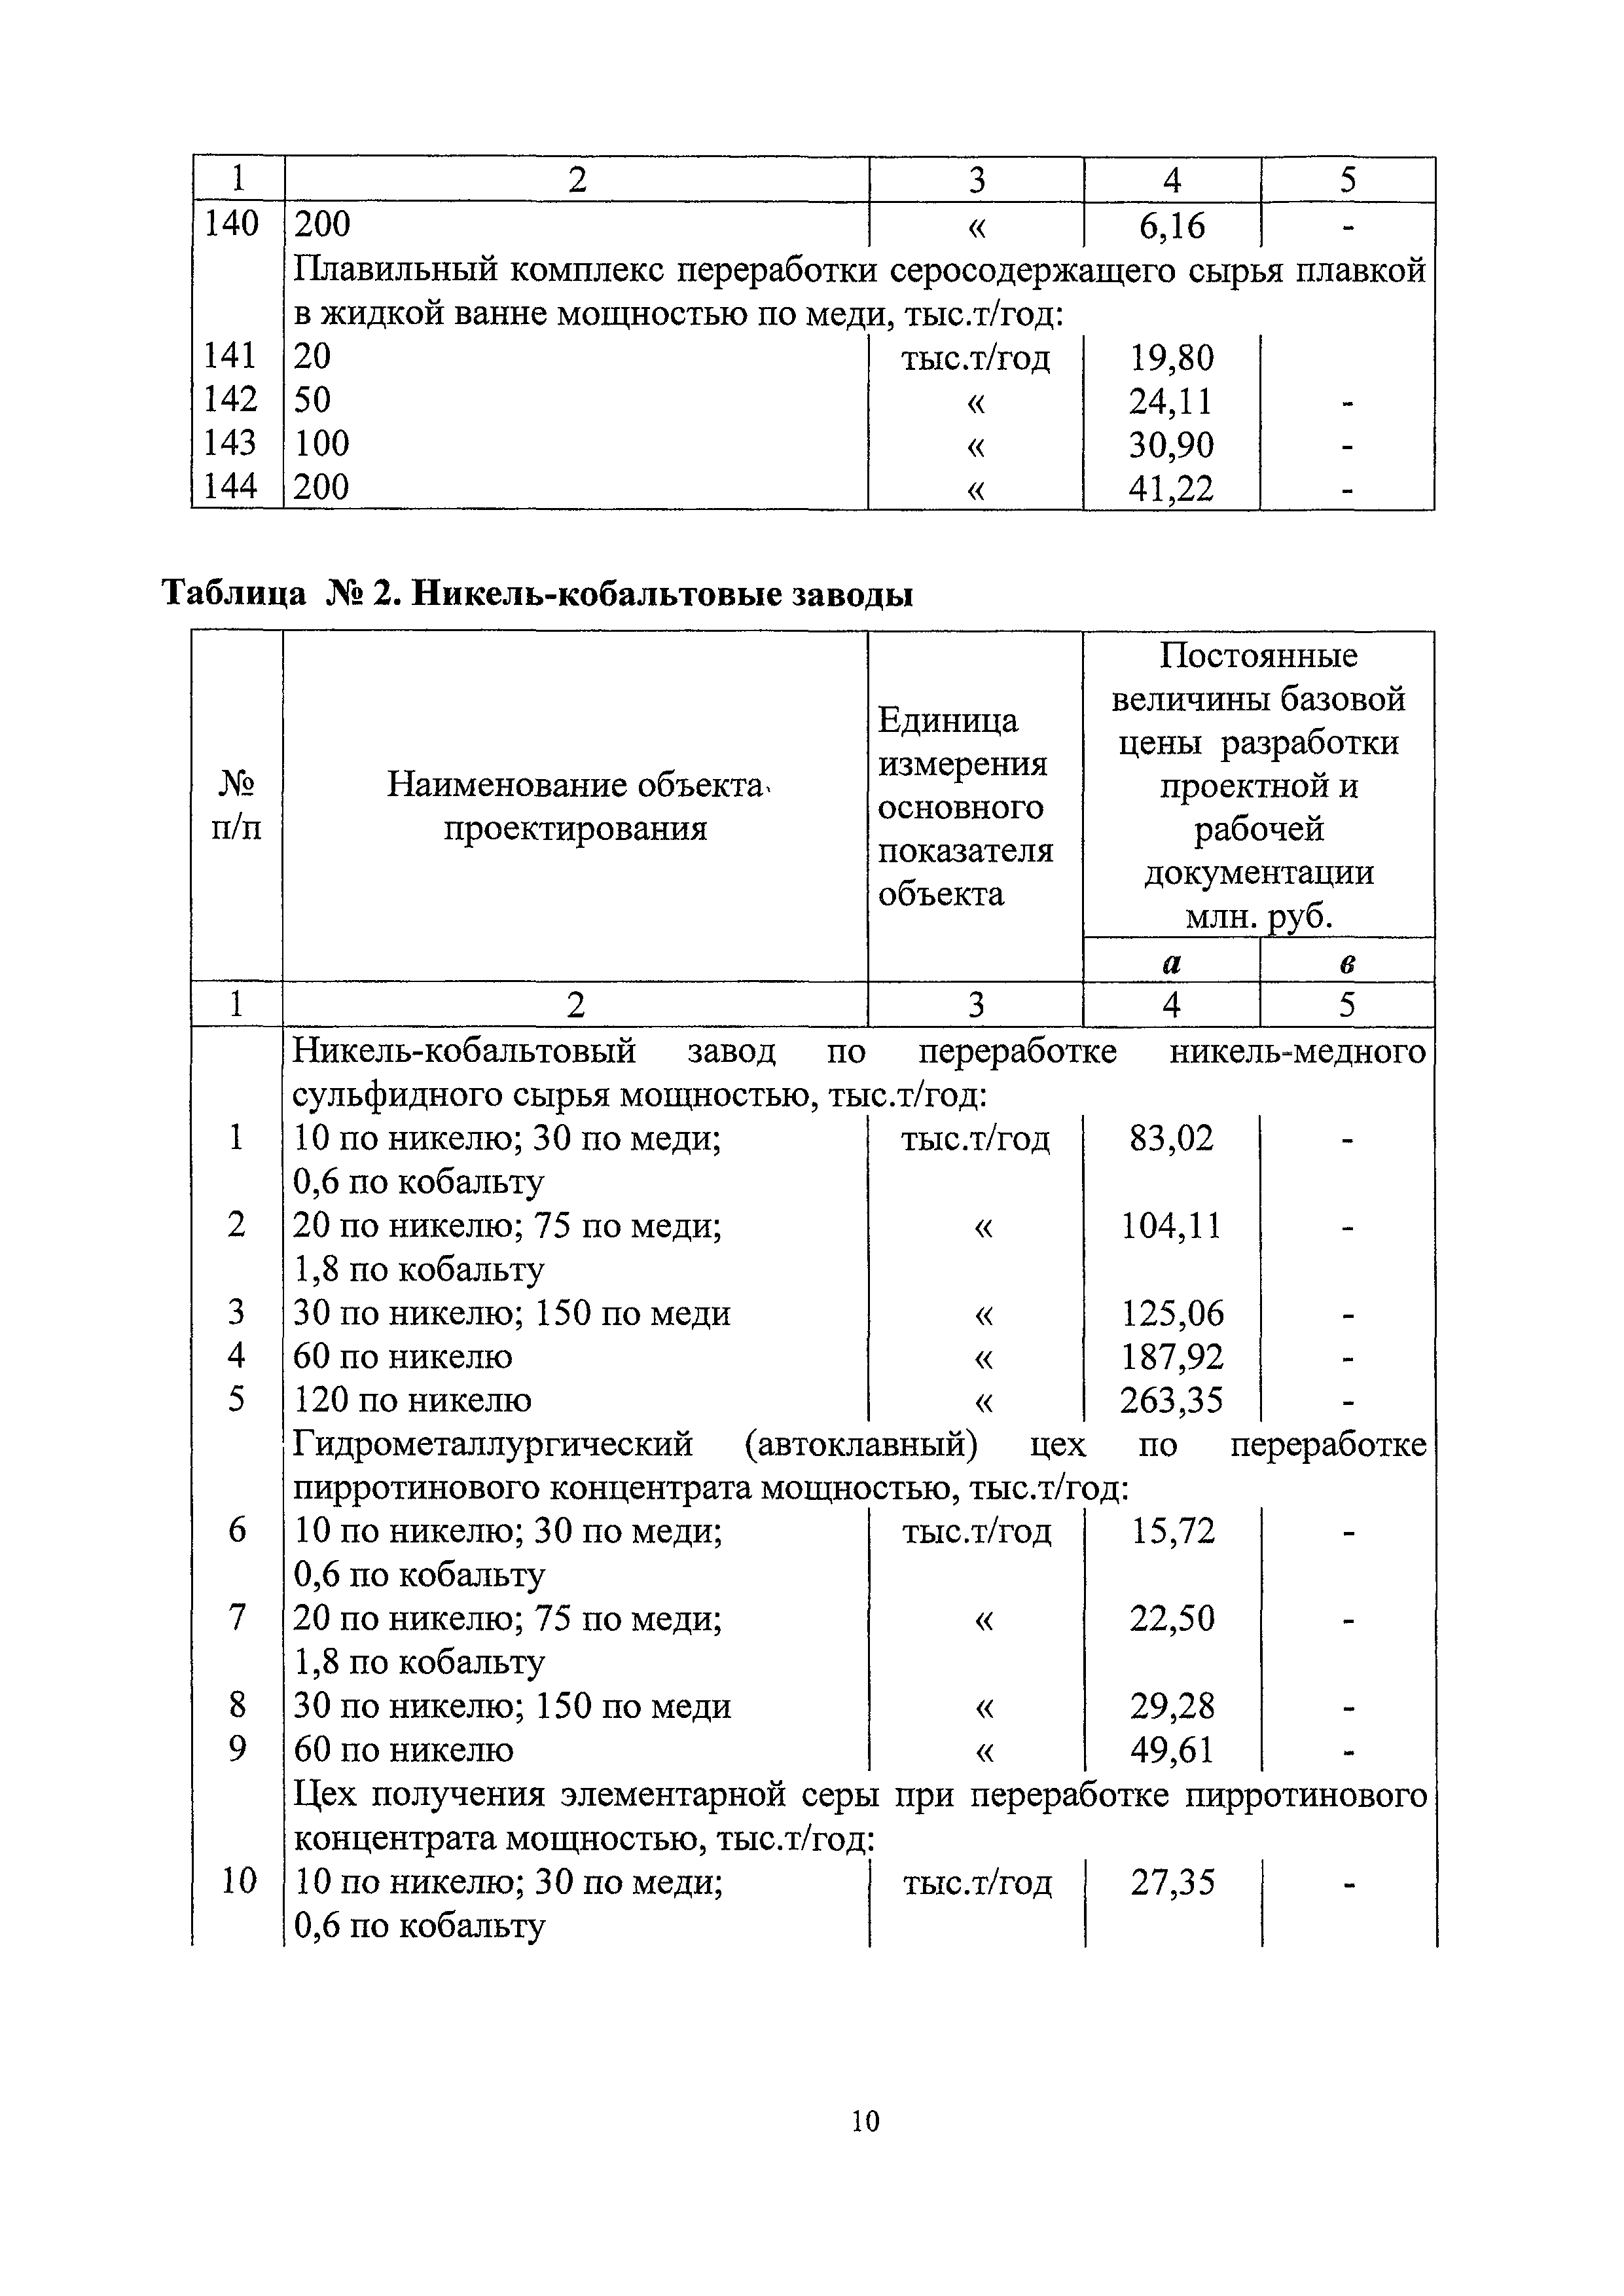 СБЦП 81-2001-20